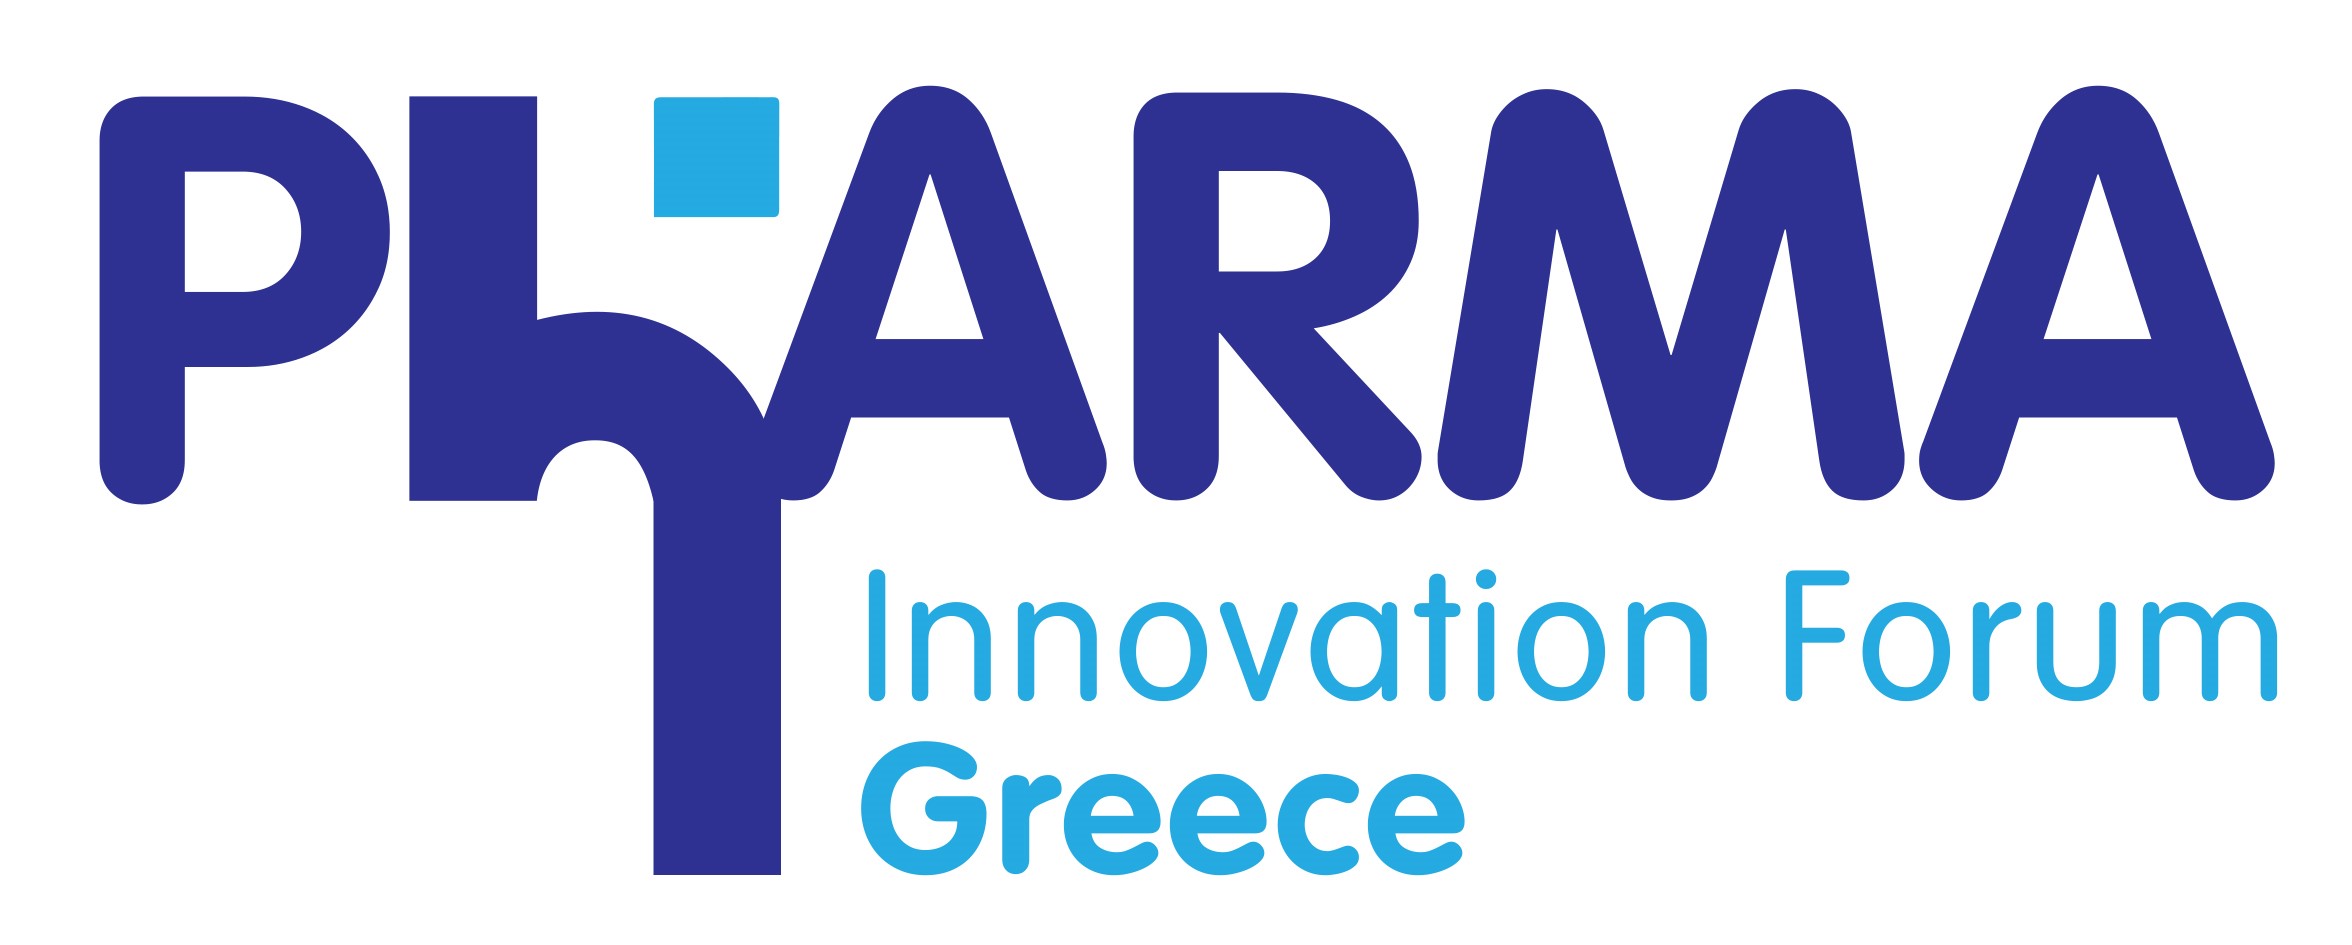 PhARMA Innovation Forum Greece: Οι ανάγκες των ασθενών στο επίκεντρο